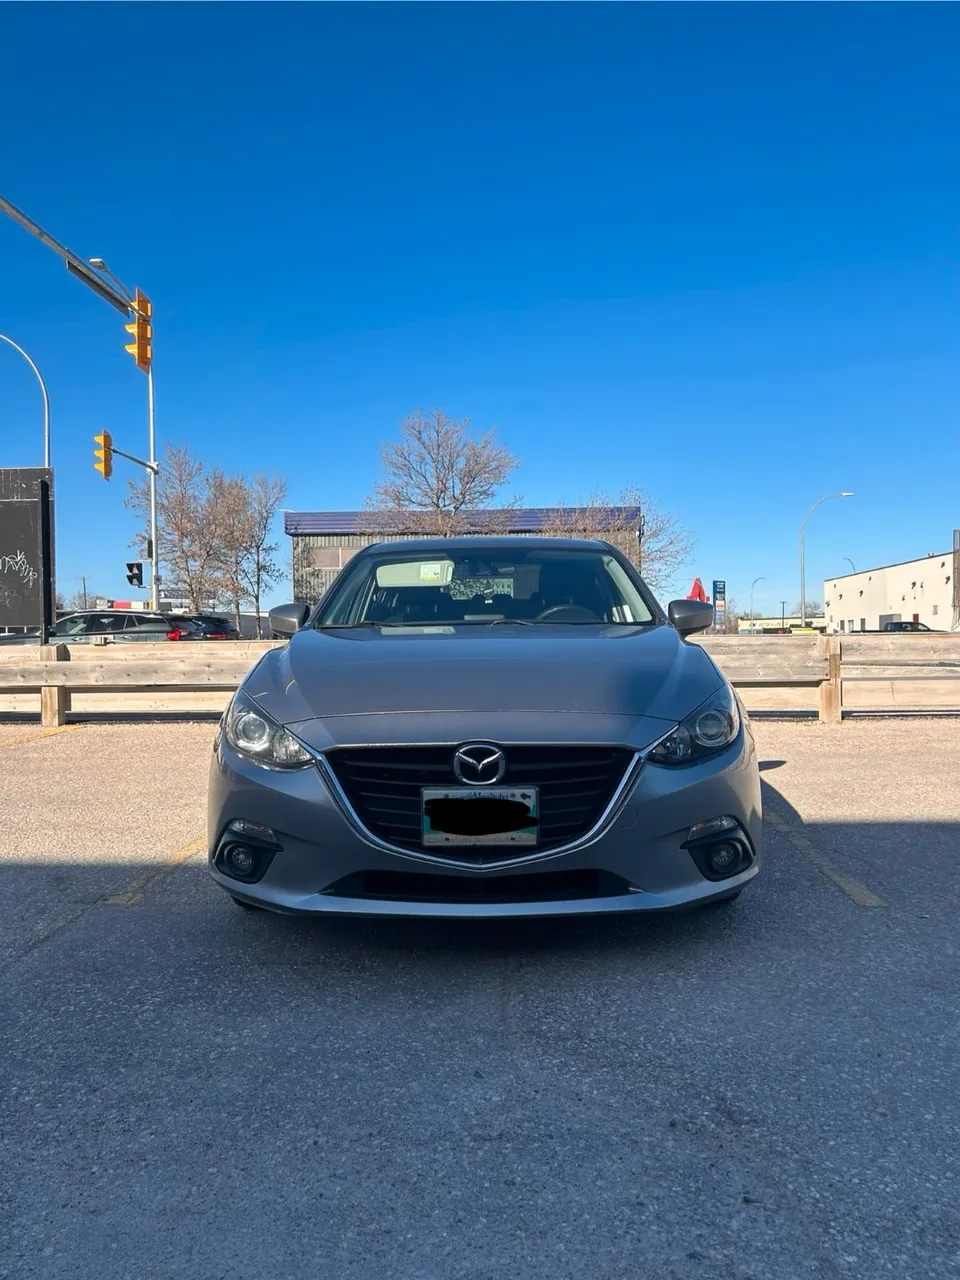 2015 Mazda 3 GS-SKY